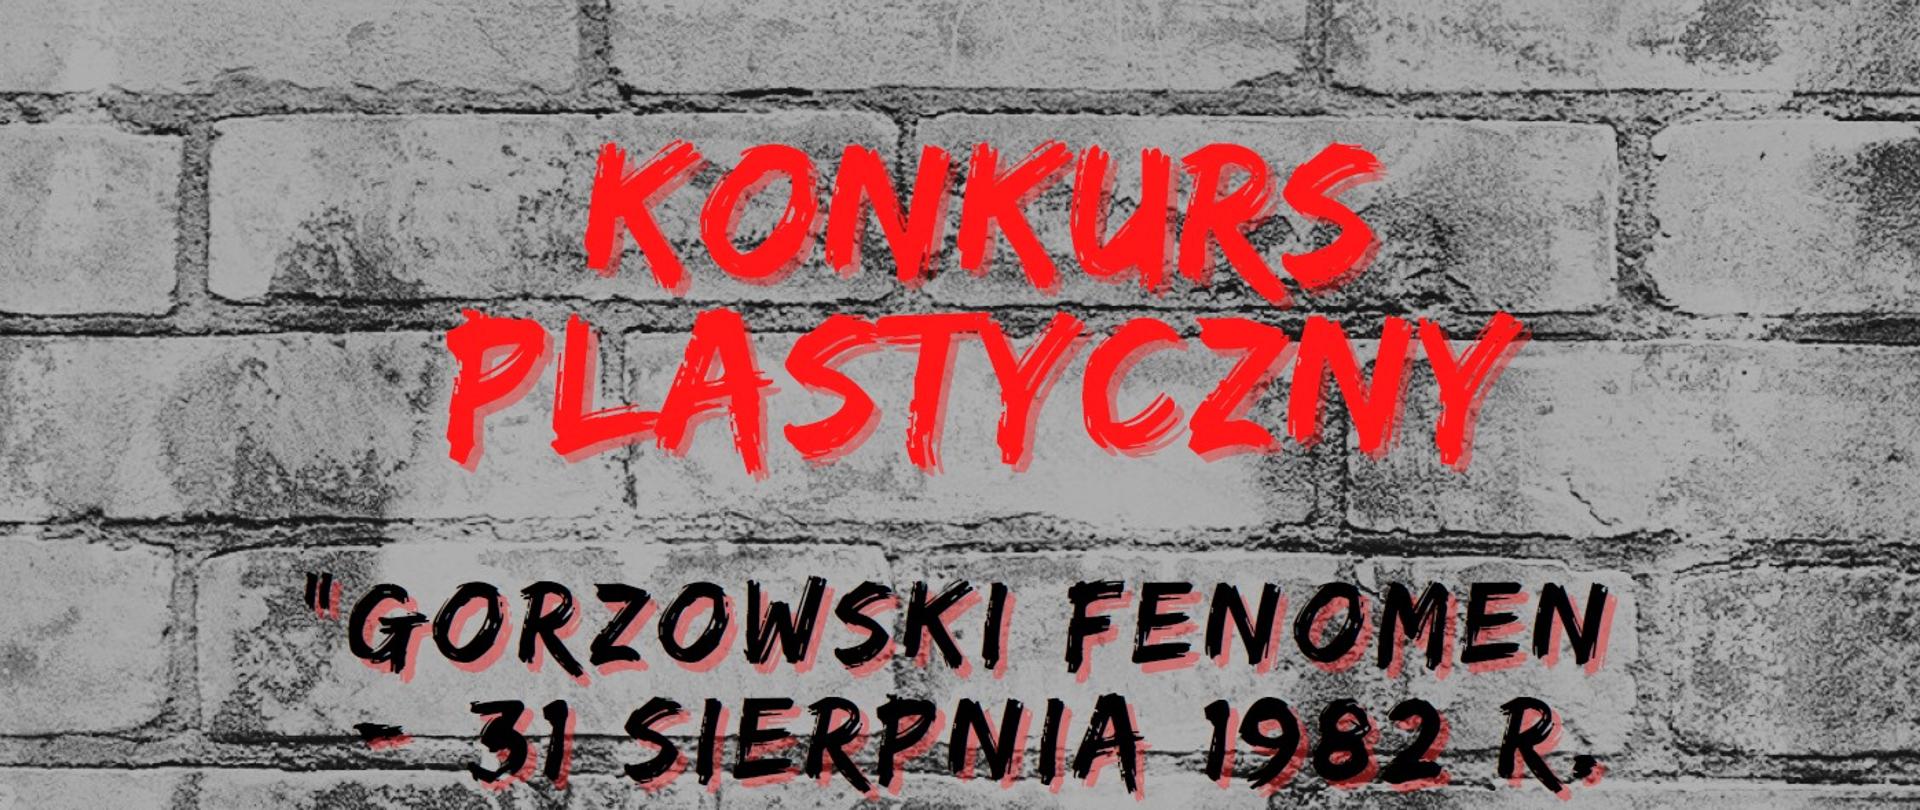 KONKURS PLASTYCZNY - GORZOWSKI FENOMEN - 31 SIERPNIA 1982 R.